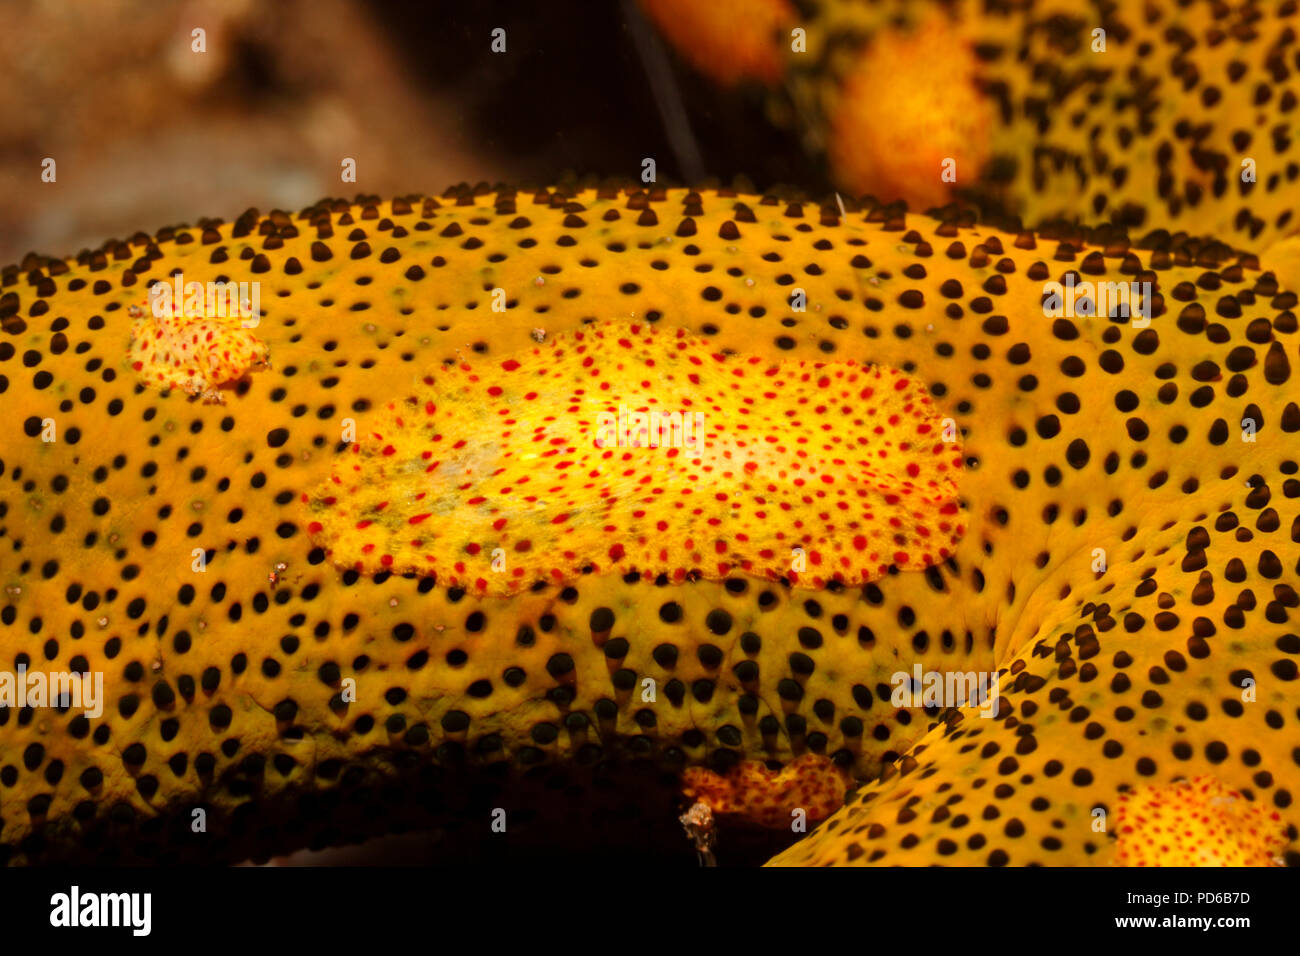 Platyctenid Rippenqualle, oder schleichende Comb Jelly, Coeloplana astericola, leben auf einem Sea Star. Tulamben, Bali, Indonesien. Bali Sea, Indischer Ozean Stockfoto